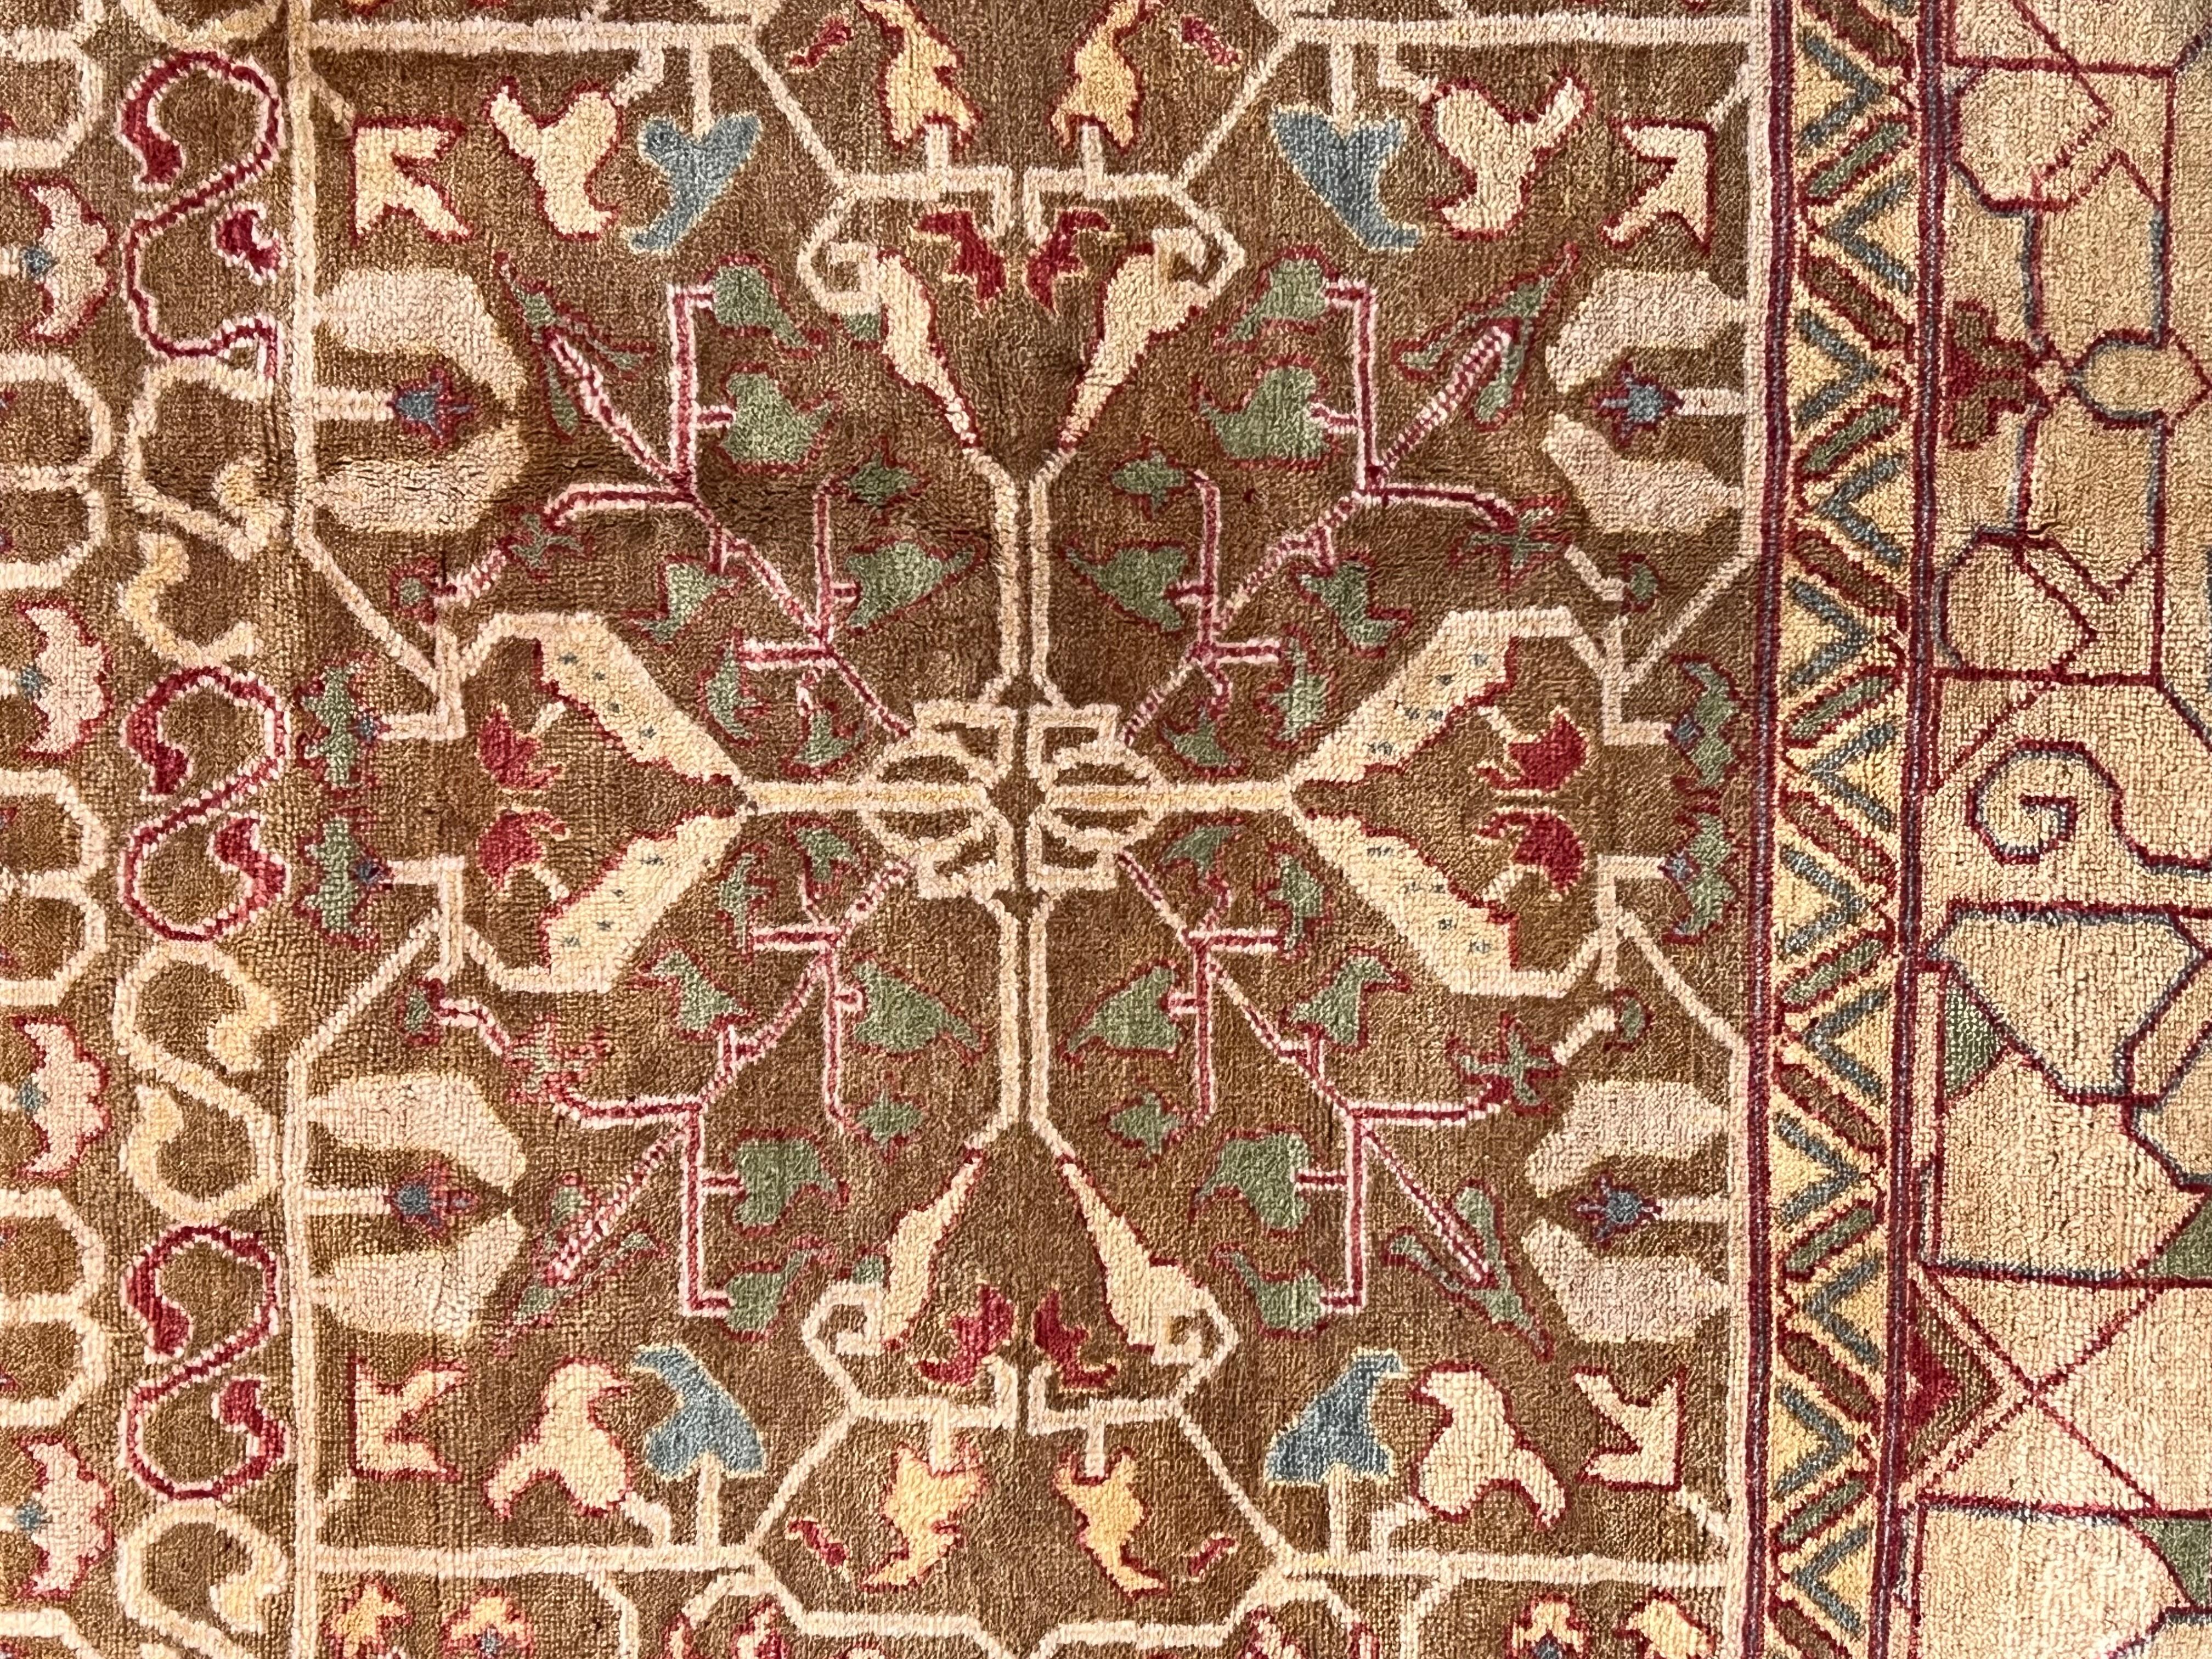 Ein bedeutender zeitgenössischer Teppich, der in der Türkei vollständig von Hand gefertigt wird und von den berühmten Mamluken-Teppichen inspiriert ist. Mamluken sind ägyptische Teppiche, wahrscheinlich aus Kairo, die in der letzten Periode des